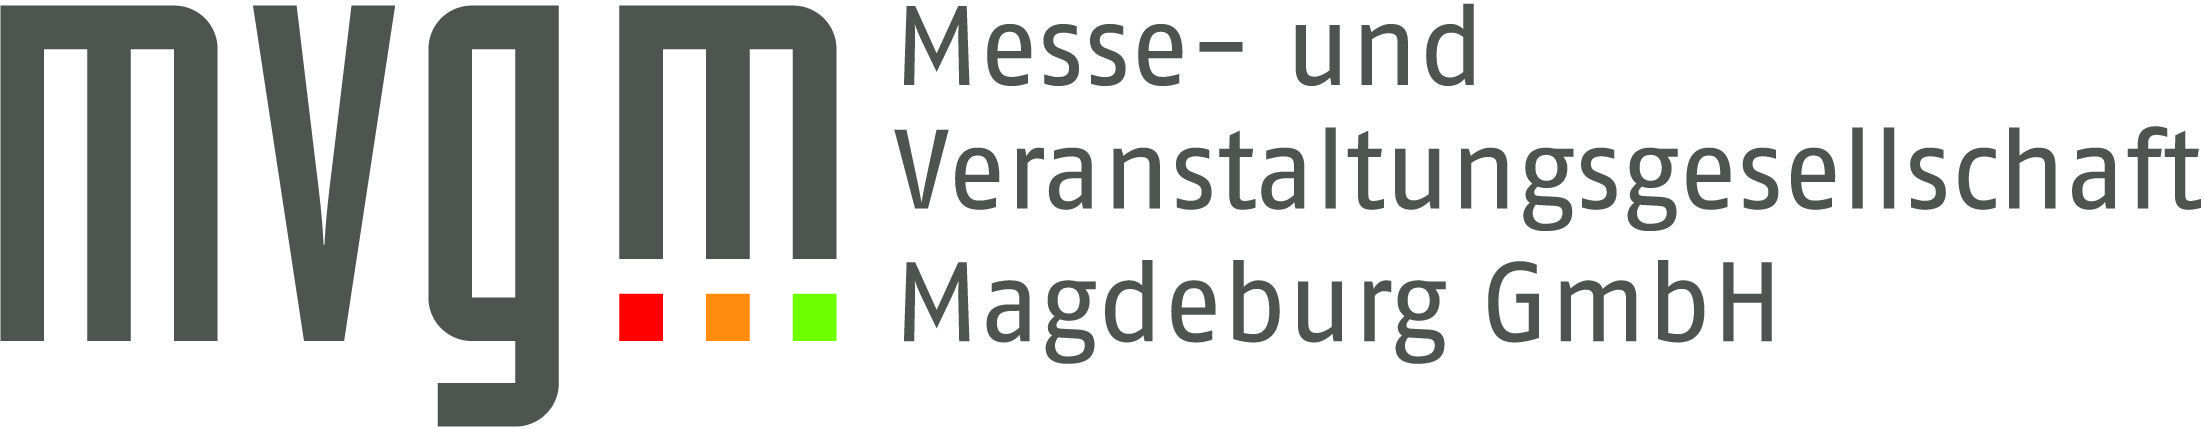 Messe- und Veranstaltungsgesellschaft Magdeburg GmbH